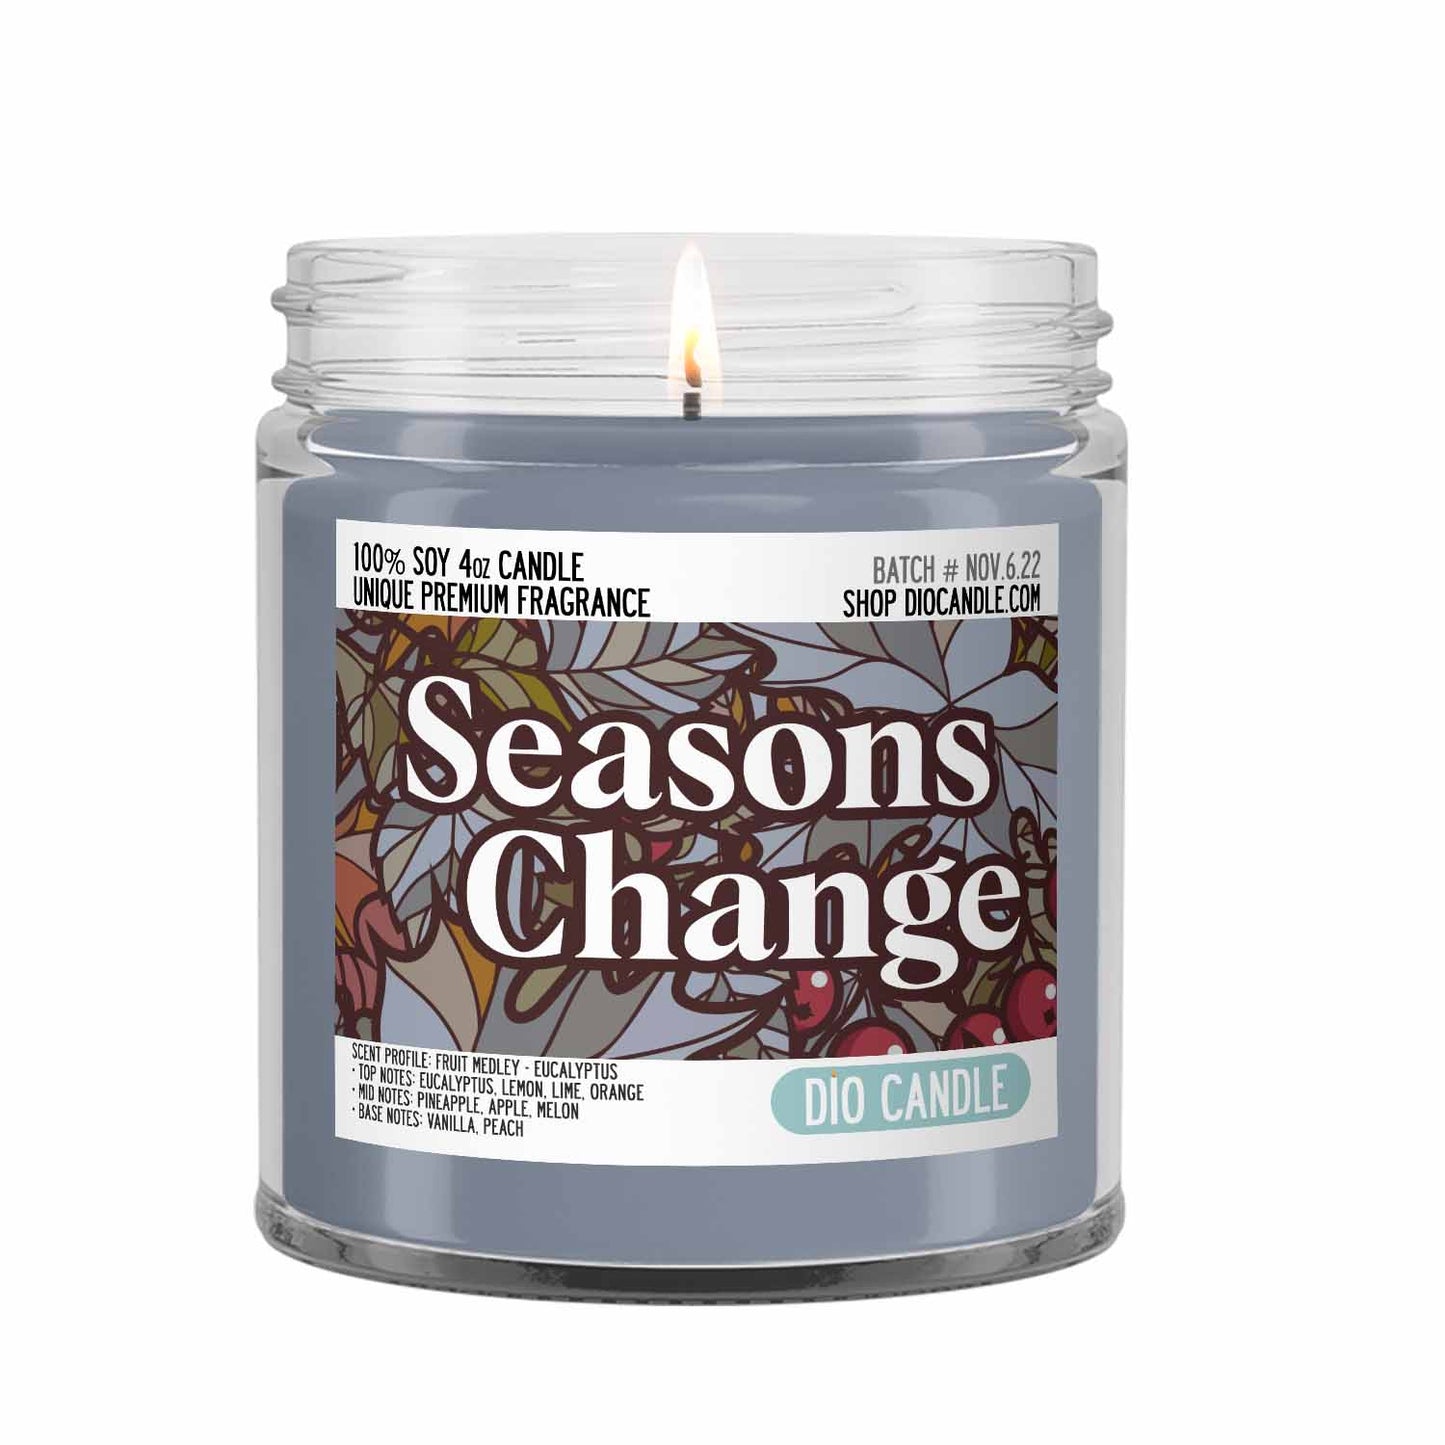 Season's Change Candle